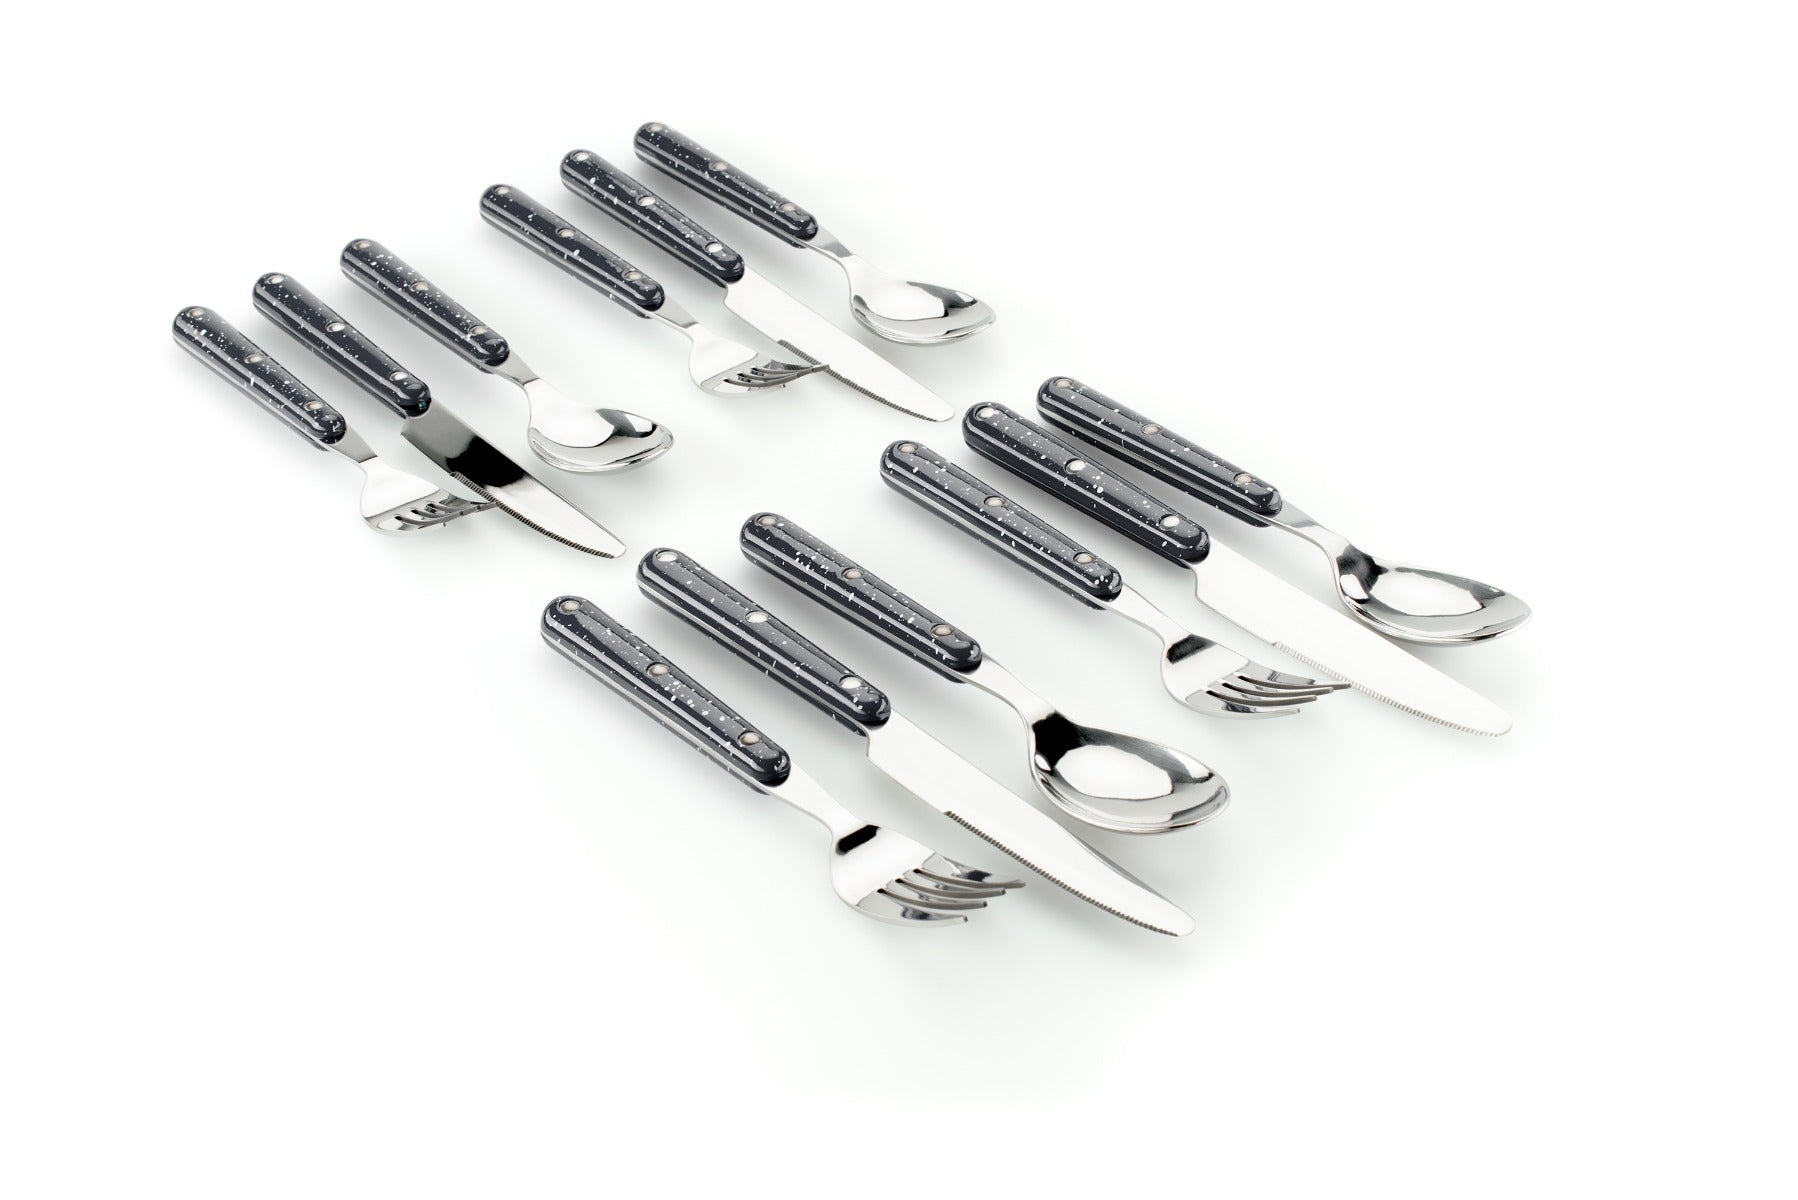 Pioneer Cutlery Set